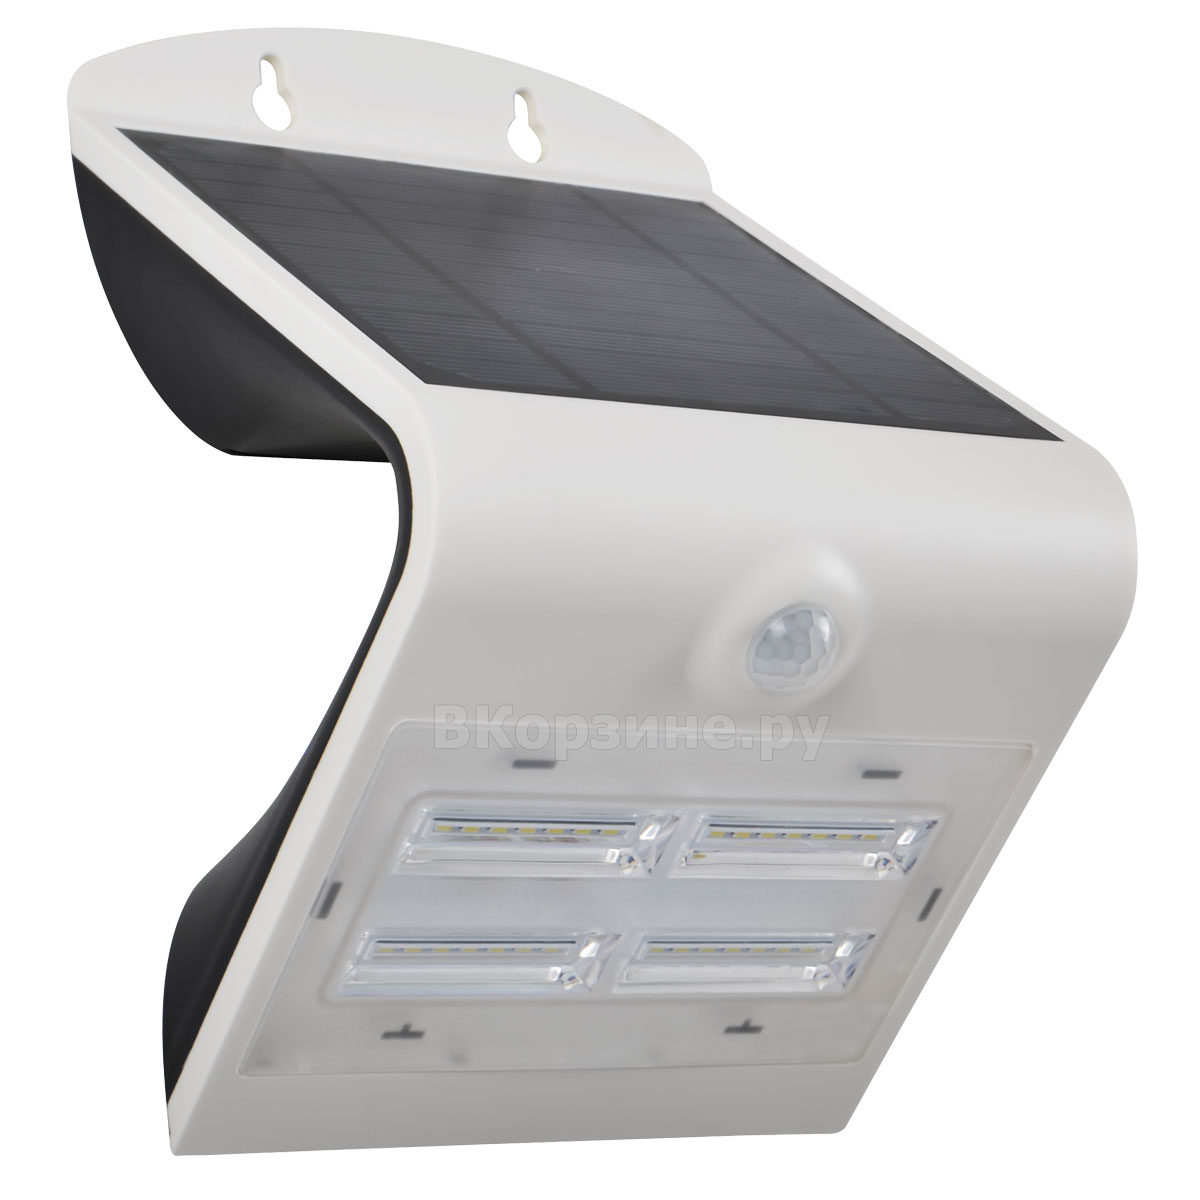 Светильники на солнечных батареях - купить в интернет-магазин Eua